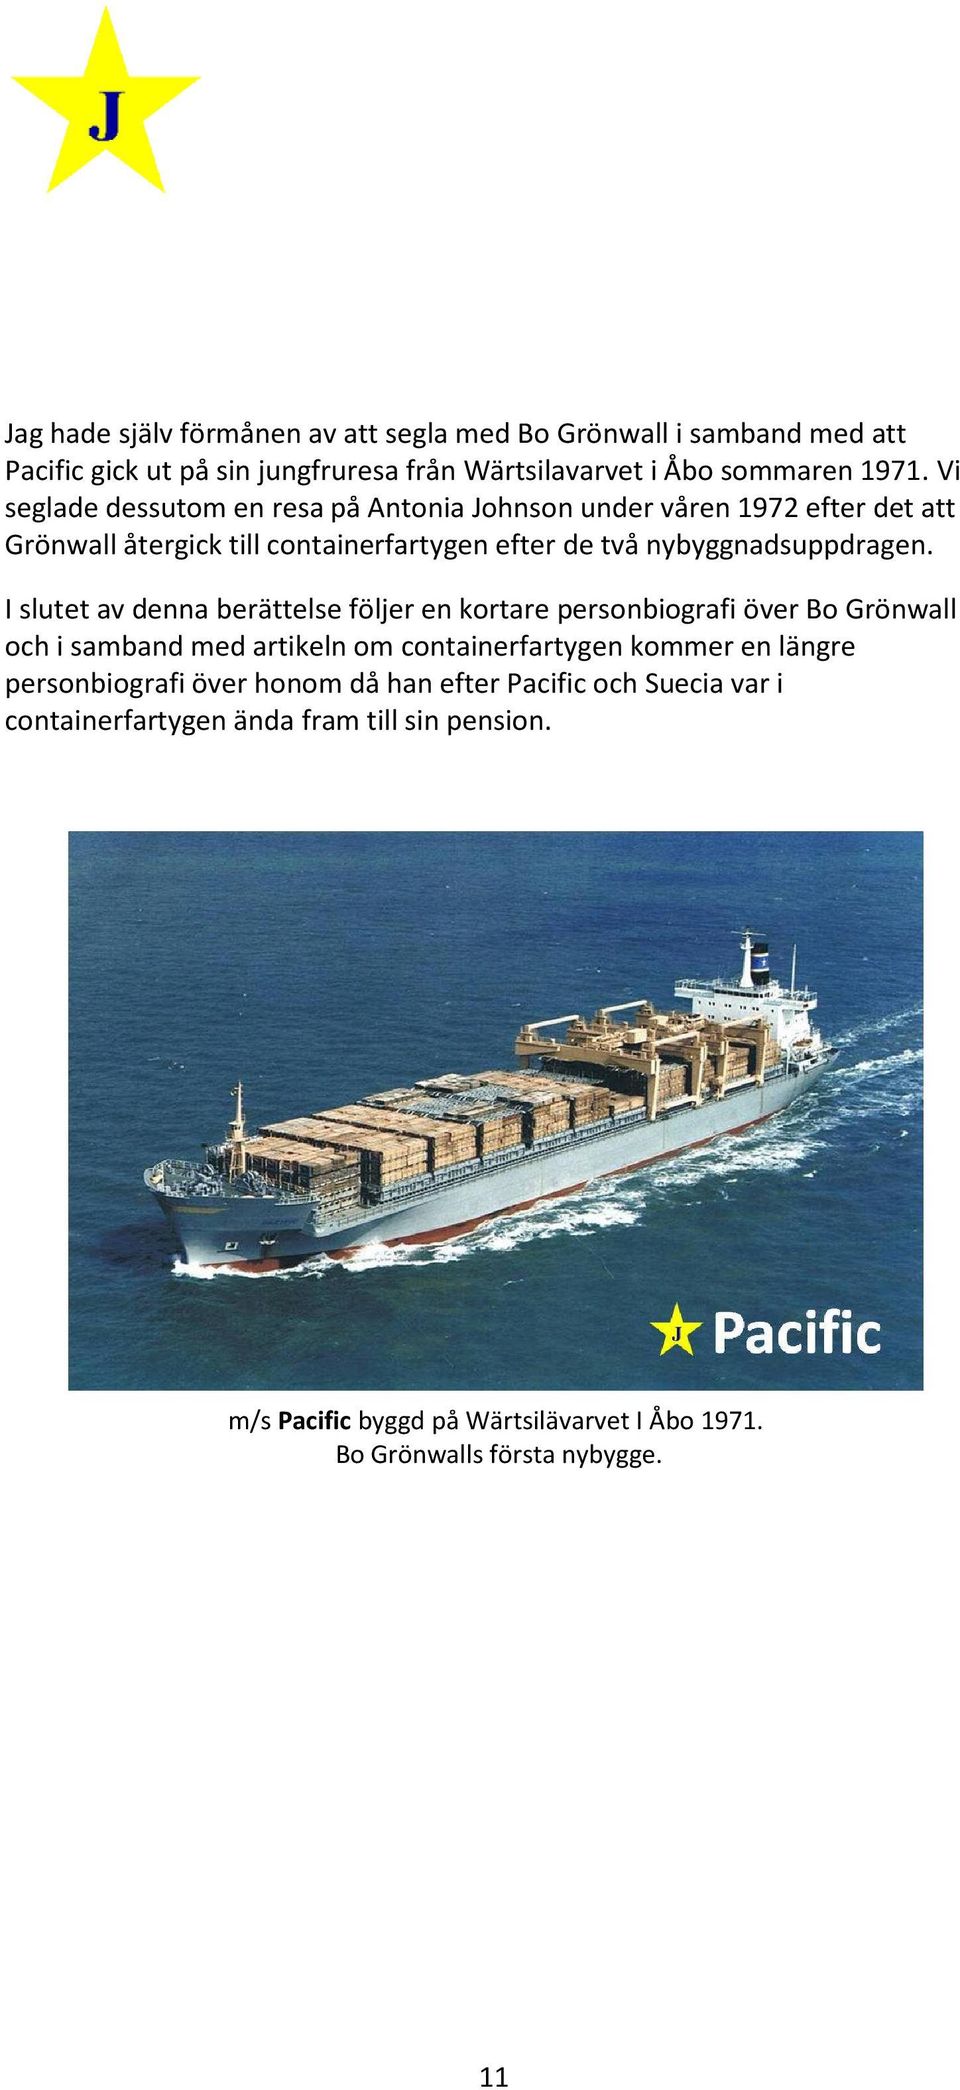 I slutet av denna berättelse följe ljer en kortare personbiografi över Bo Grönwall och i samband med artikeln om containerfartygen kommer en längre personbiografi